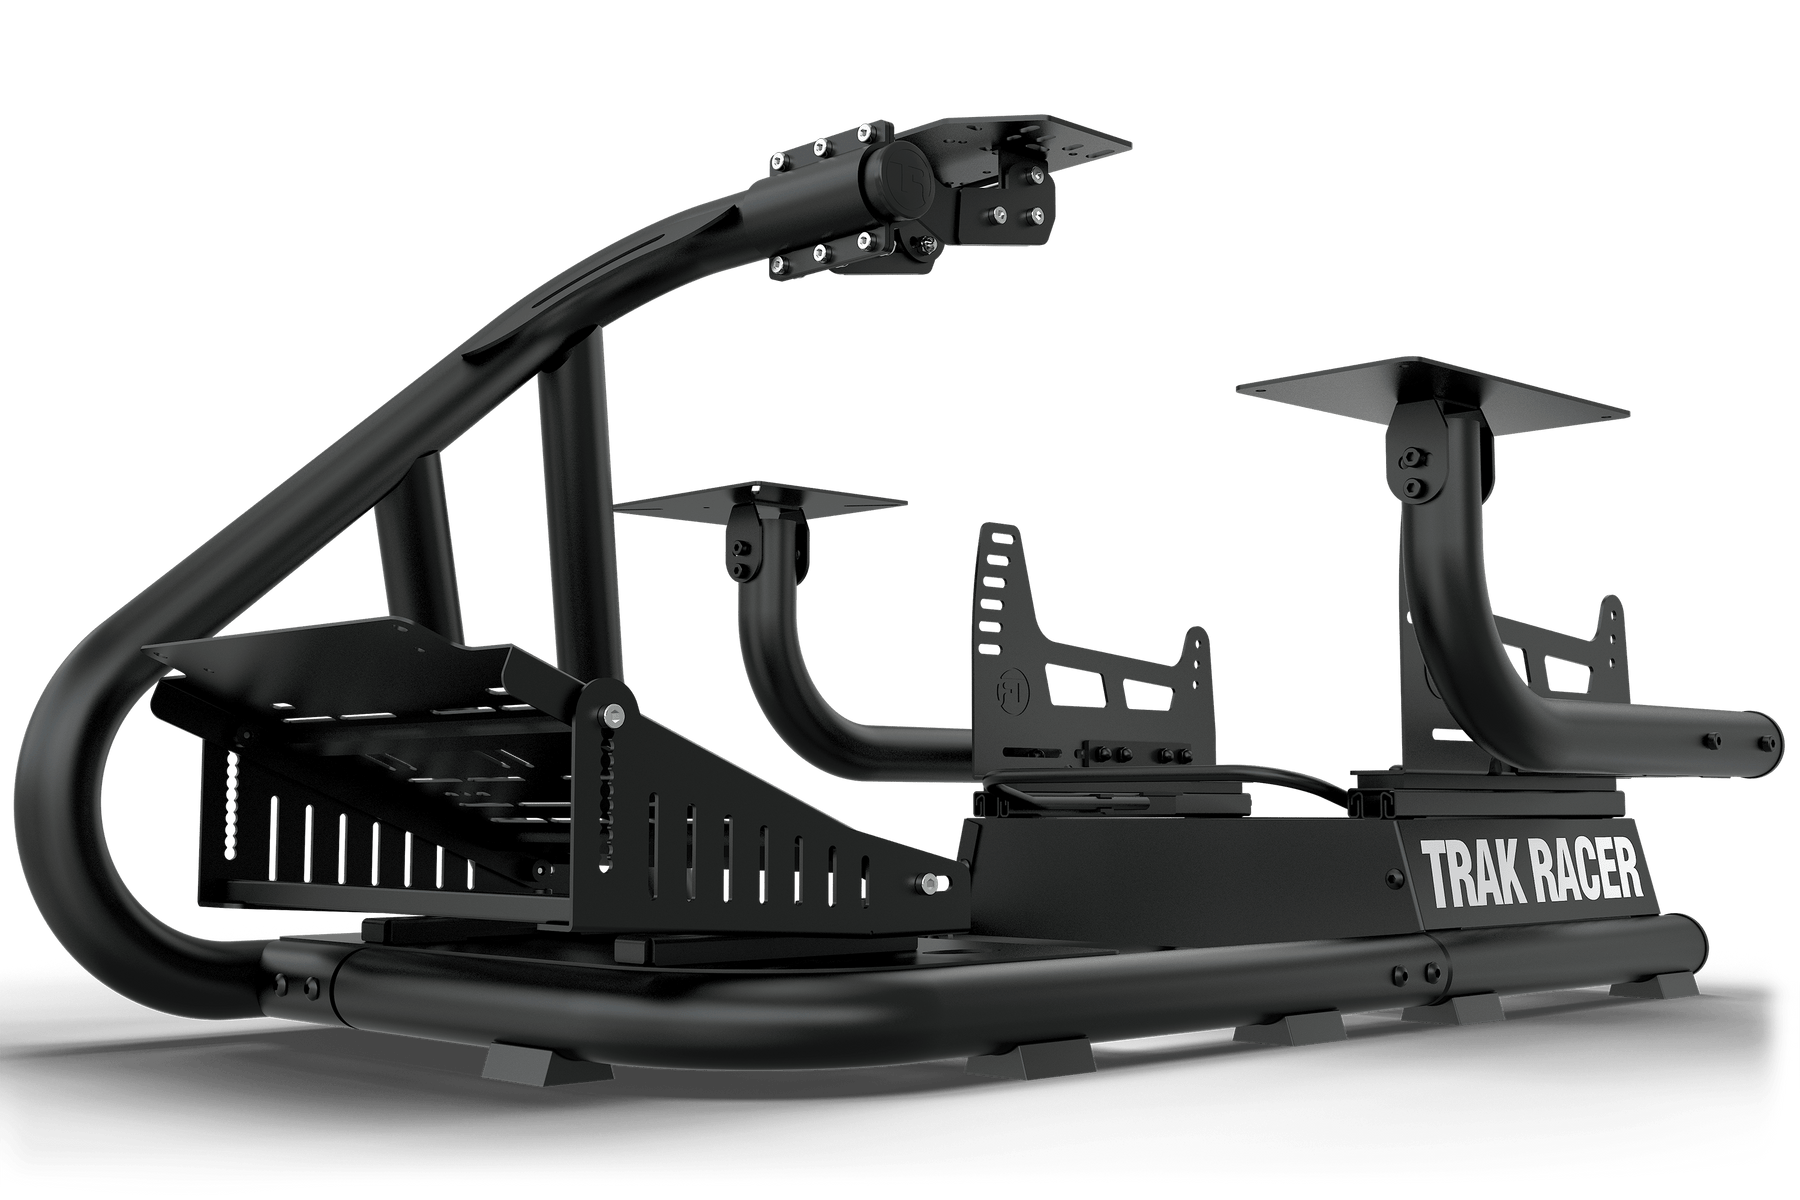 Buy Trak Racer Racing Simulators, Trak Racer